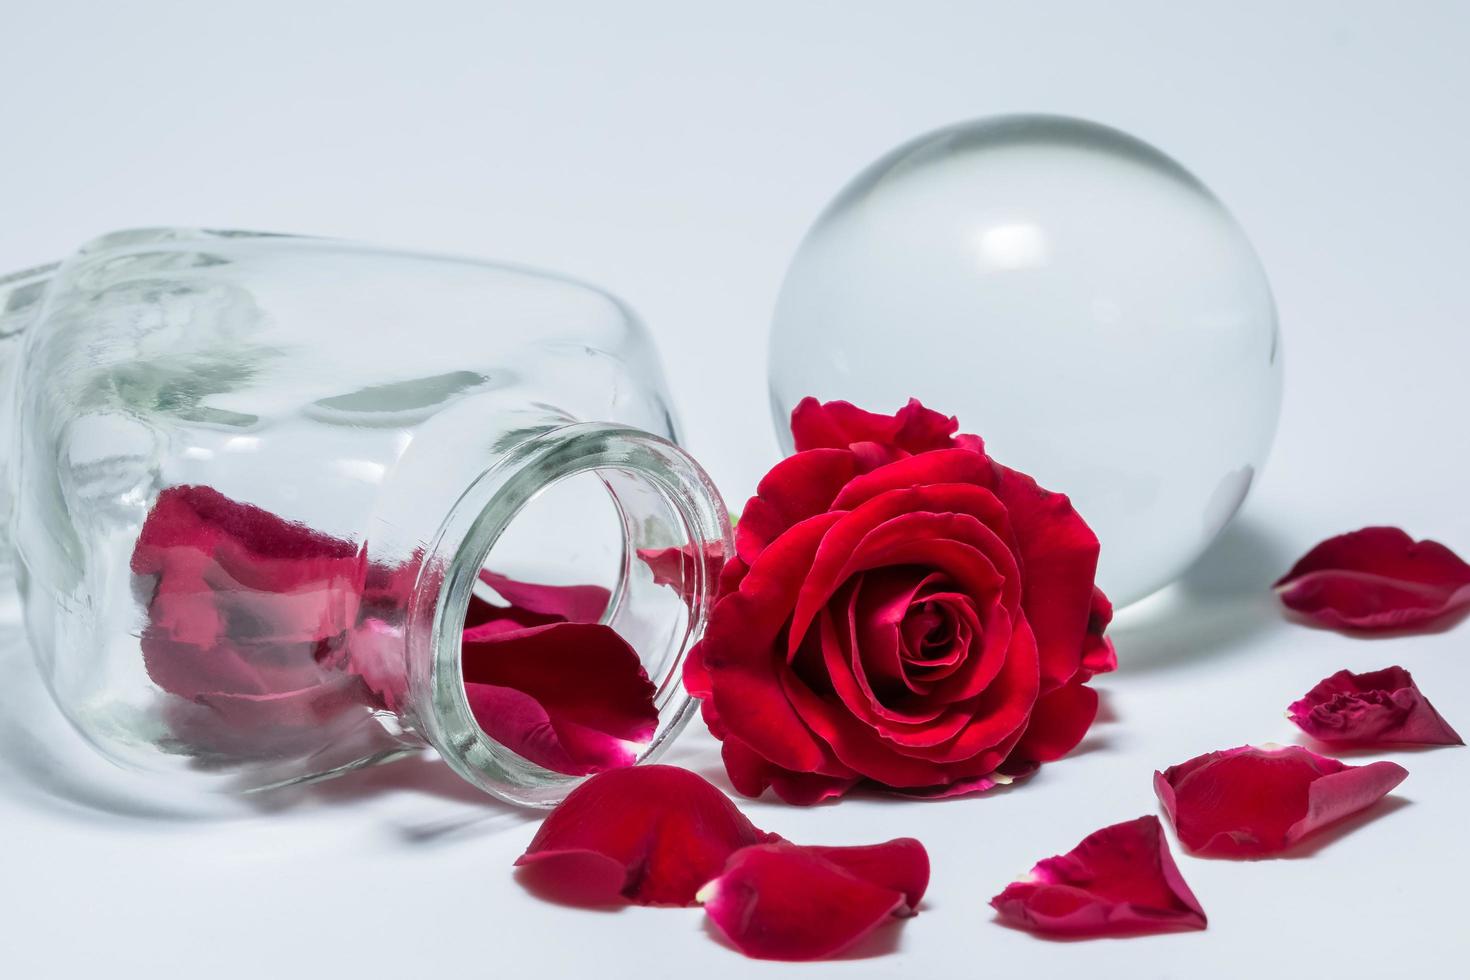 rosas vermelhas e vaso de vidro em fundo branco foto